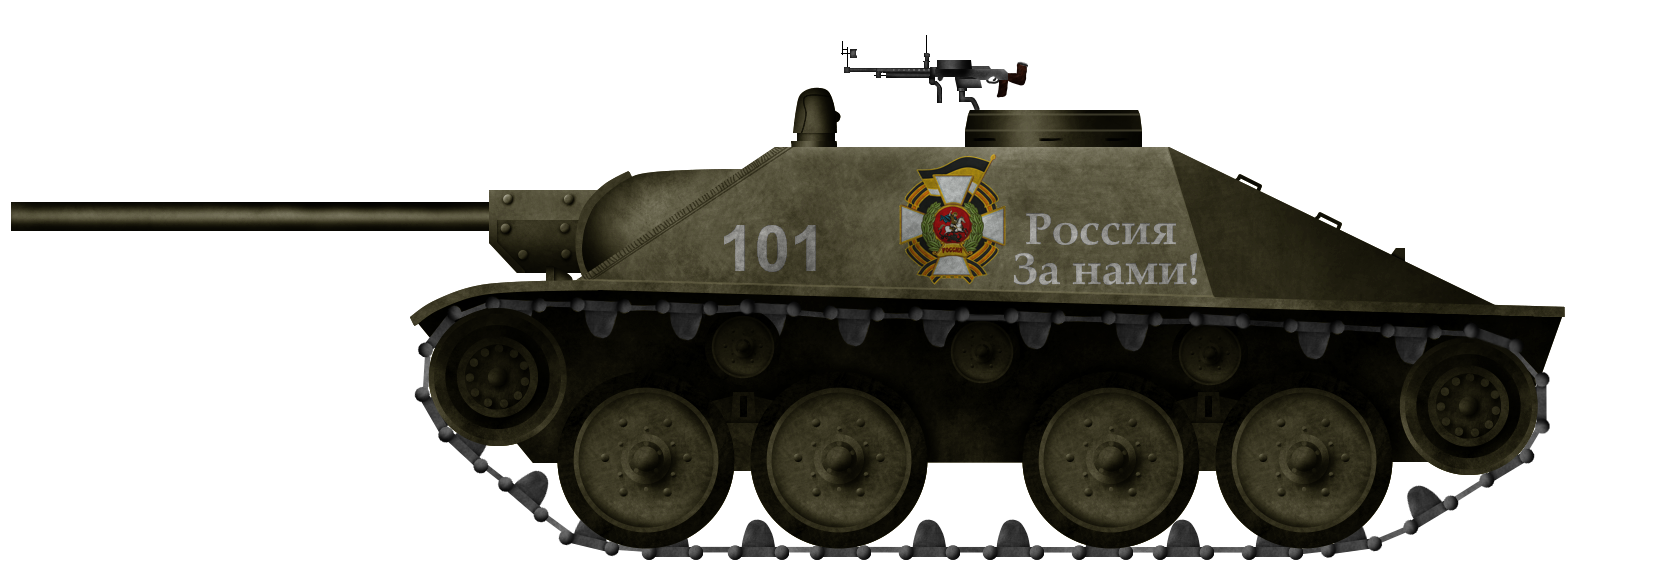 Истребитель Бурлак-21. Лёгкий Истребитель Танков для Российской Национальной Республики из Vladkov Conspiracy Theory.